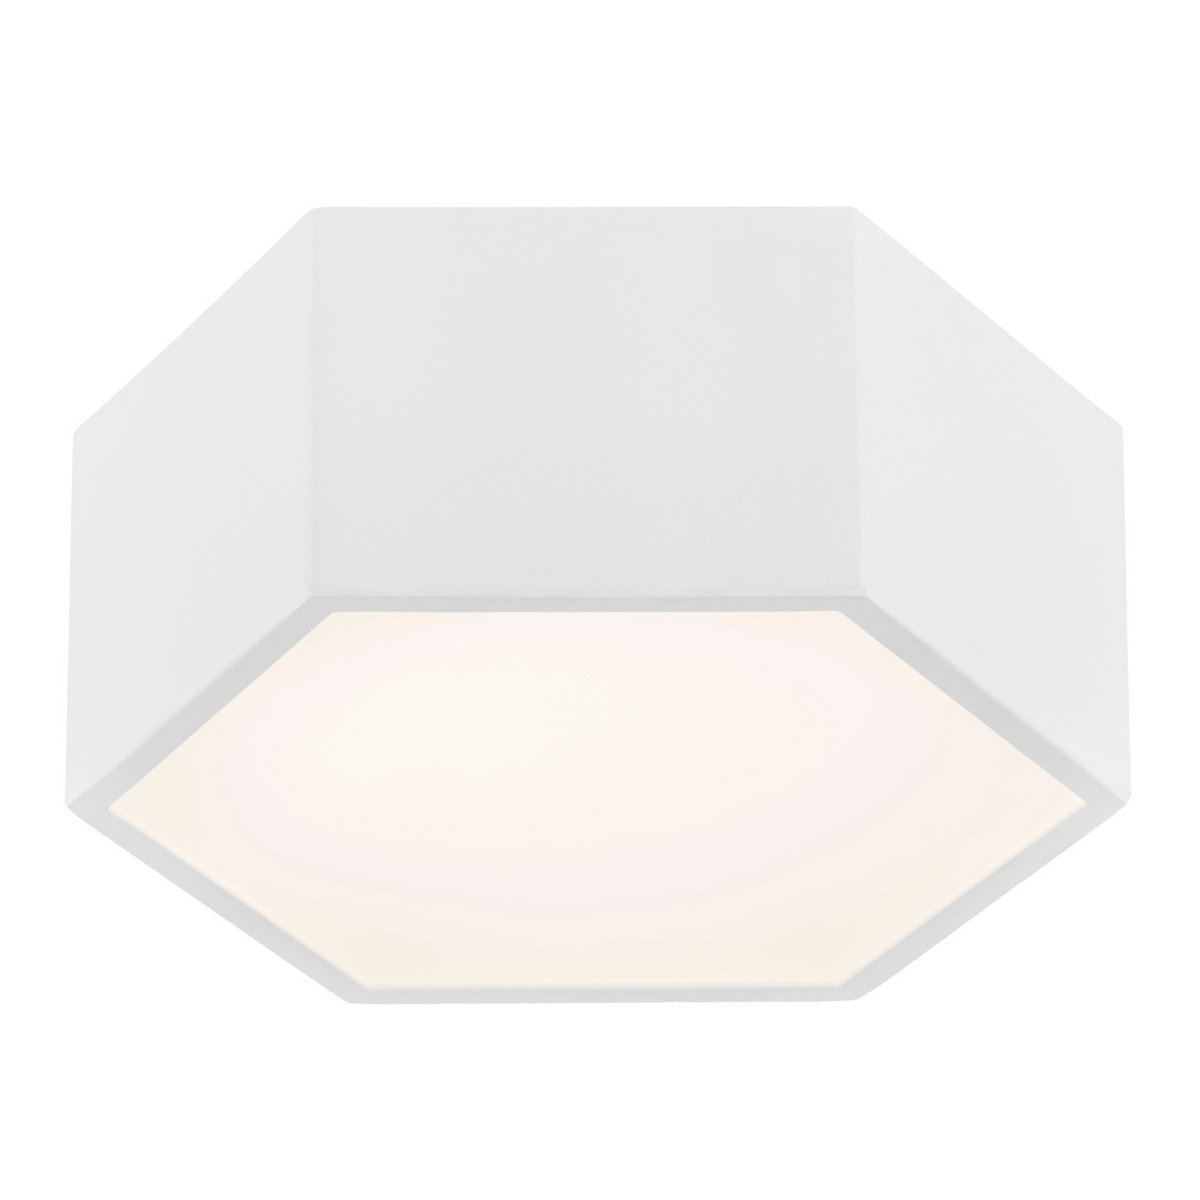 Argon Plafon LAMPA sufitowa ARIZONA 3828 ścienna OPRAWA geometryczna LED 10W kinkiet heksagon biały 3828